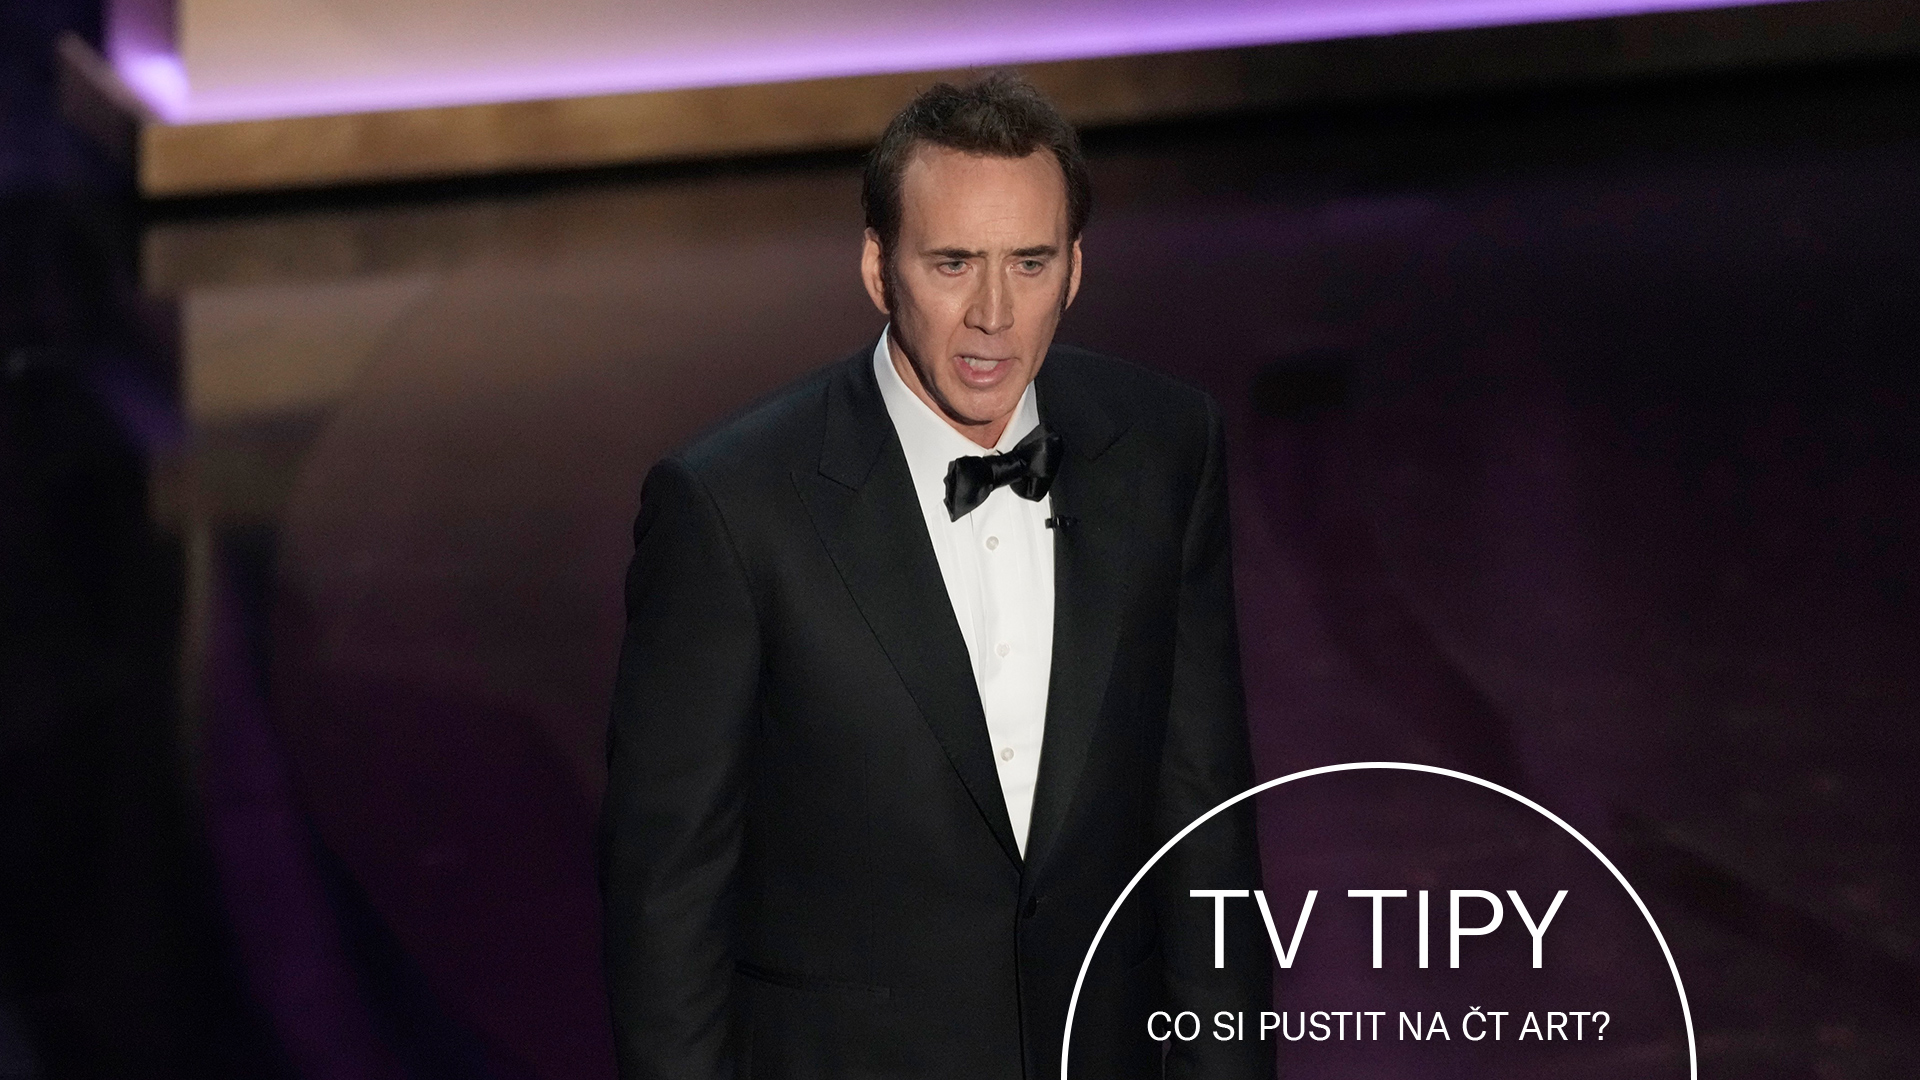 Nicolas Cage letos předával Oscara za nejlepší herecký výkon v hlavní roli